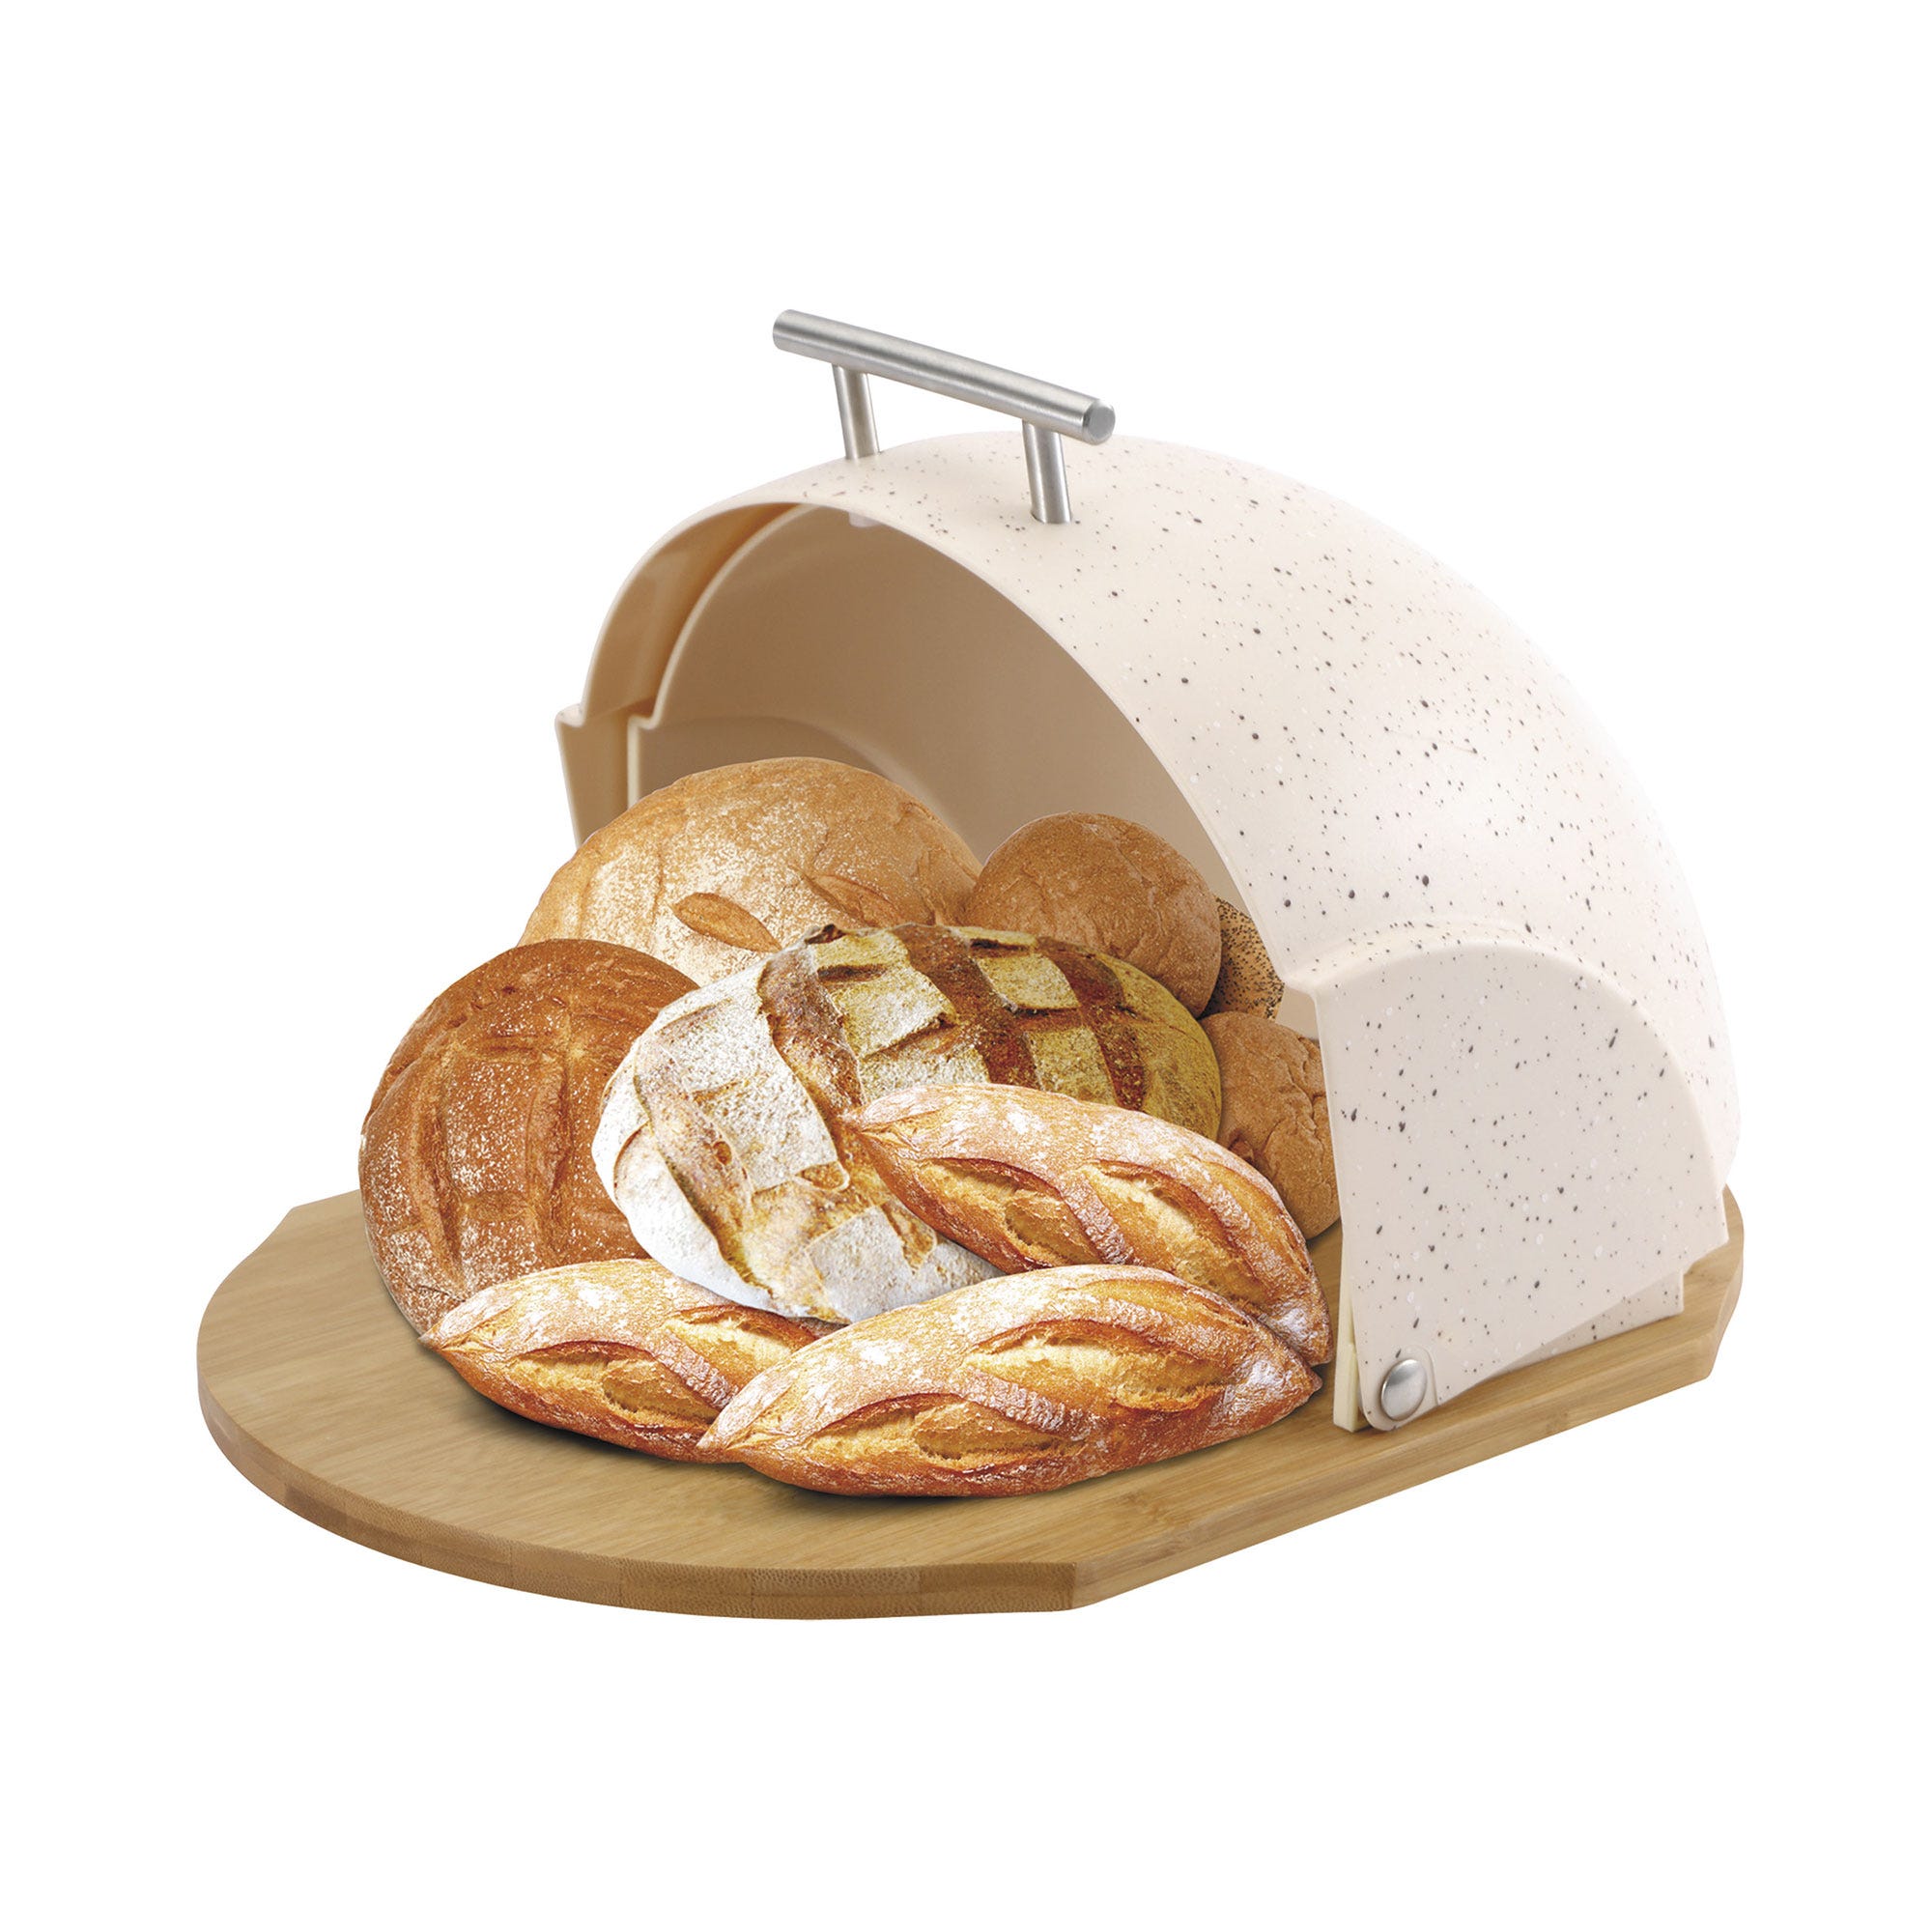 porta pane acciaio inox moderno portapane per cucina panini pasticceria  biscotti